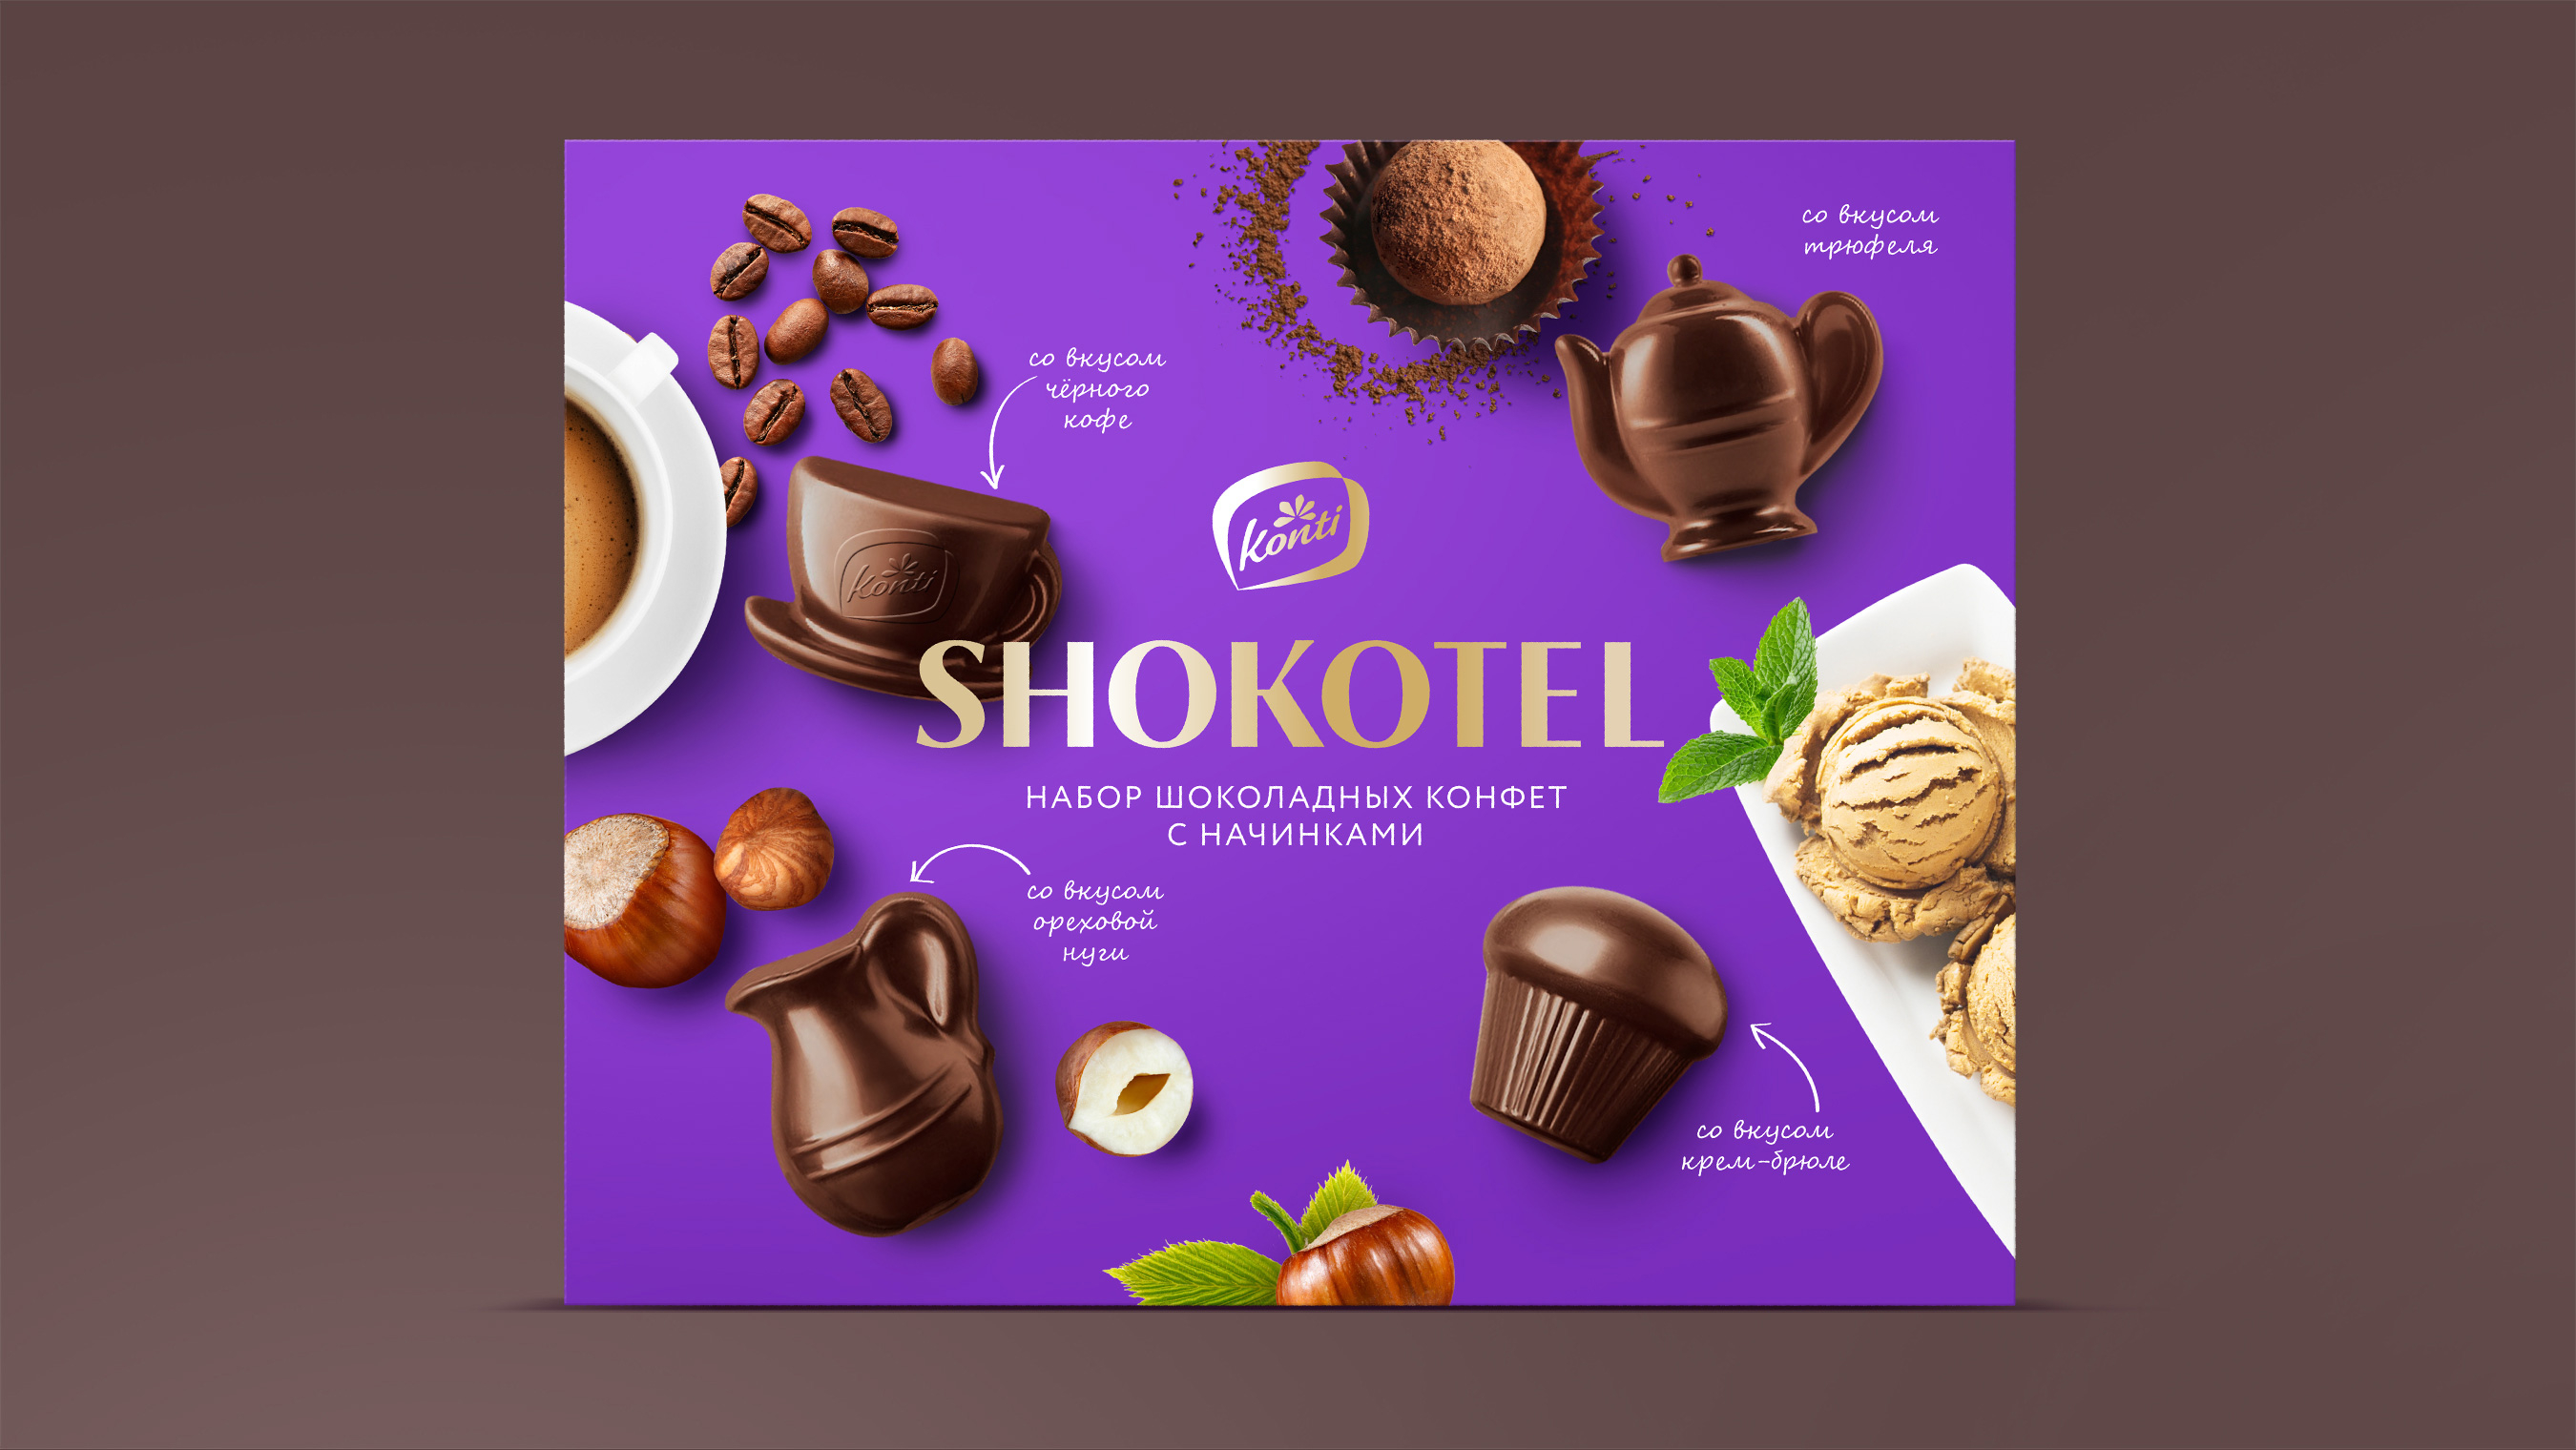 Дизайн упаковки конфет Shokotel